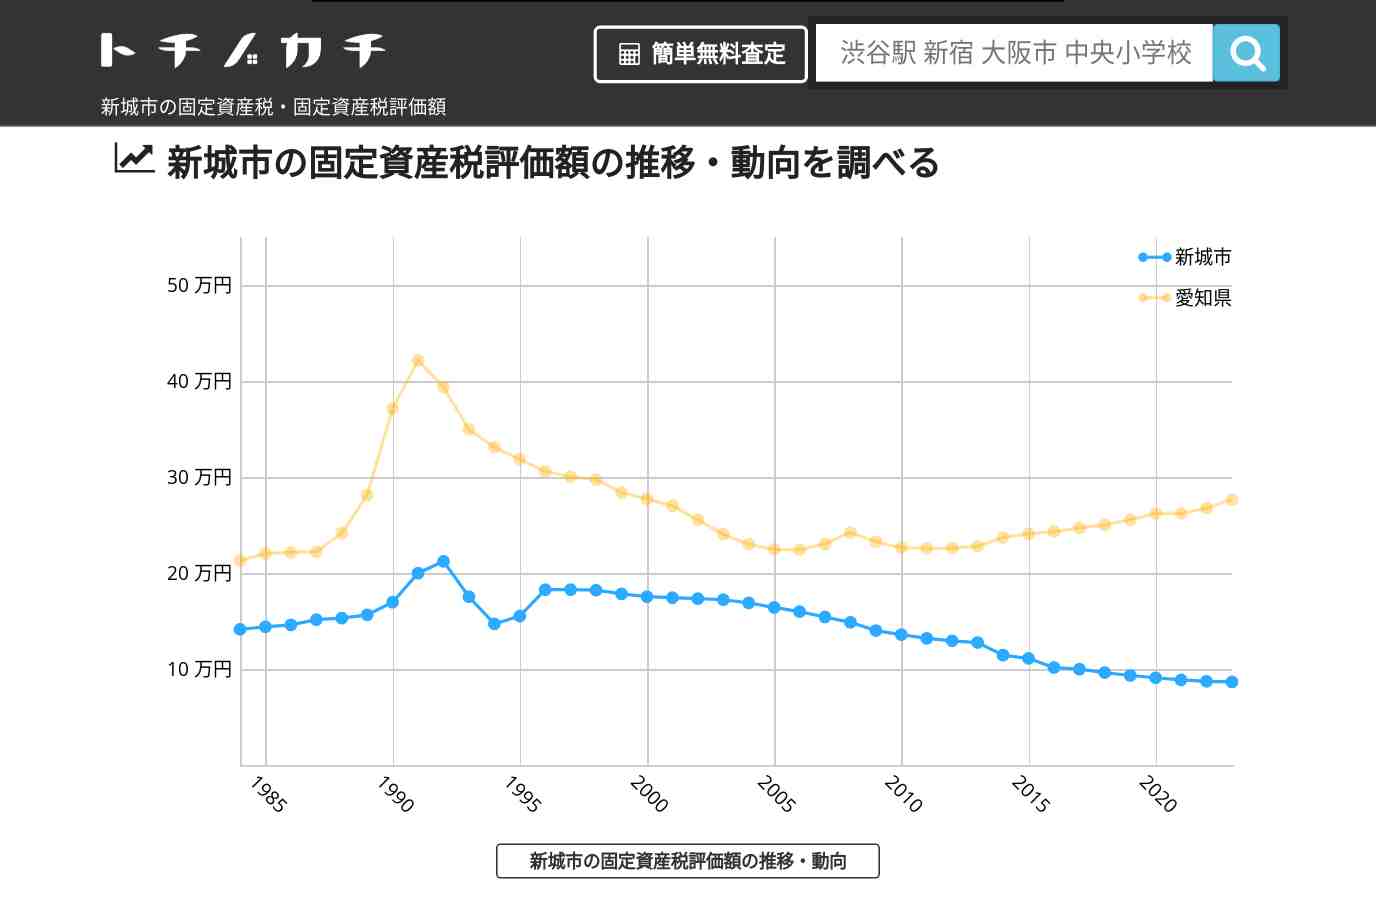 新城小学校(愛知県 新城市)周辺の固定資産税・固定資産税評価額 | トチノカチ